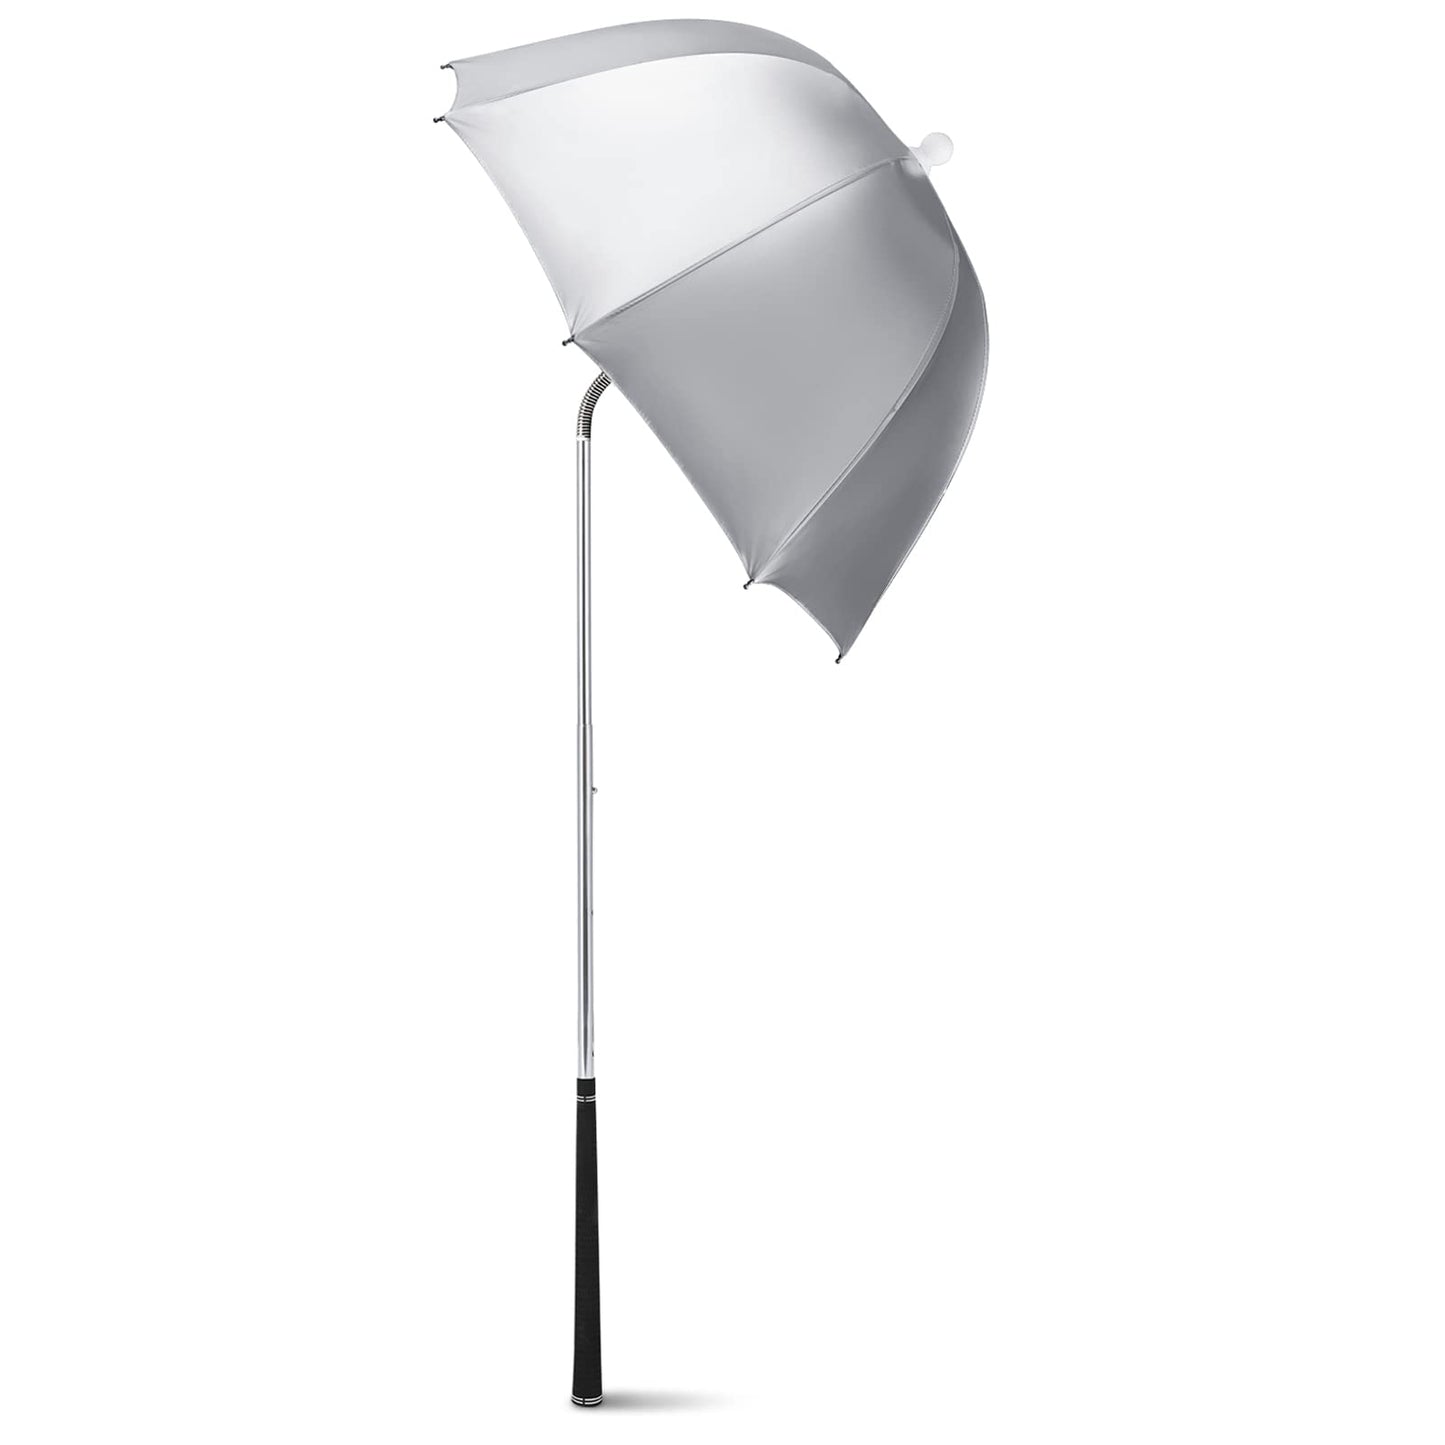 G4Free Golf Bag Umbrella for Club Protection Flex Umbrella